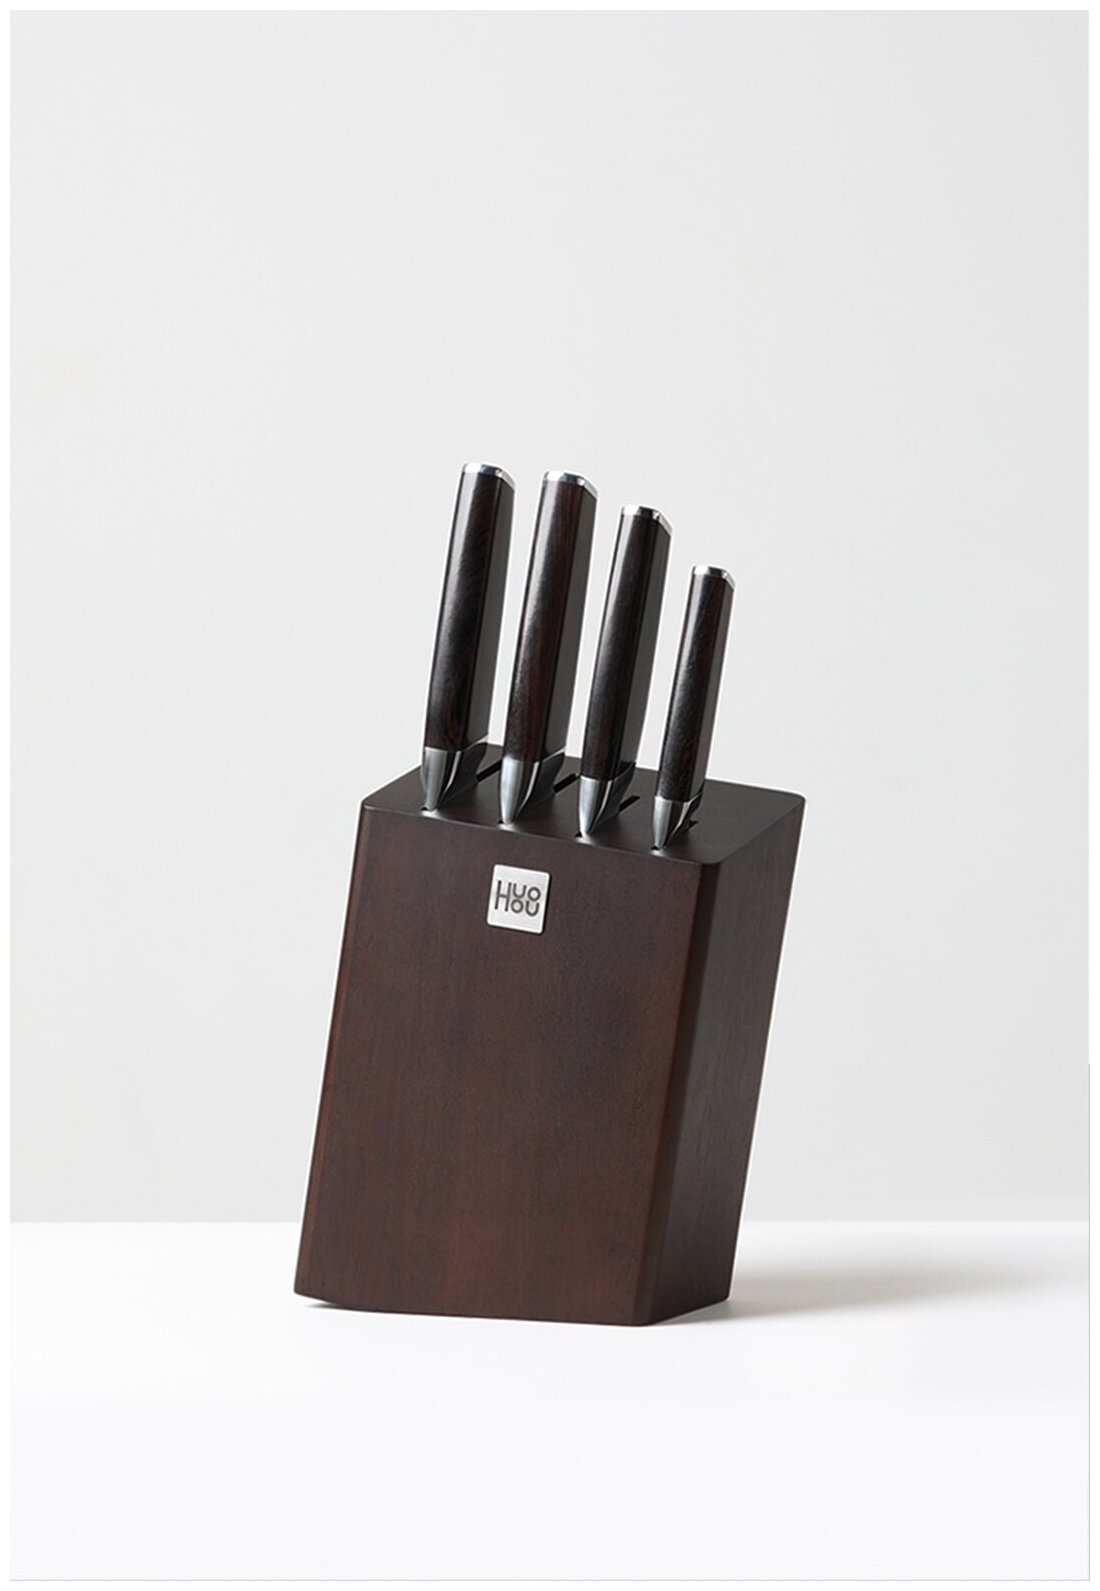 Набор стальных ножей (4 ножа + подставка) HuoHou Composite Steel Kitchen Knife Set (HU0033), русская версия, черный